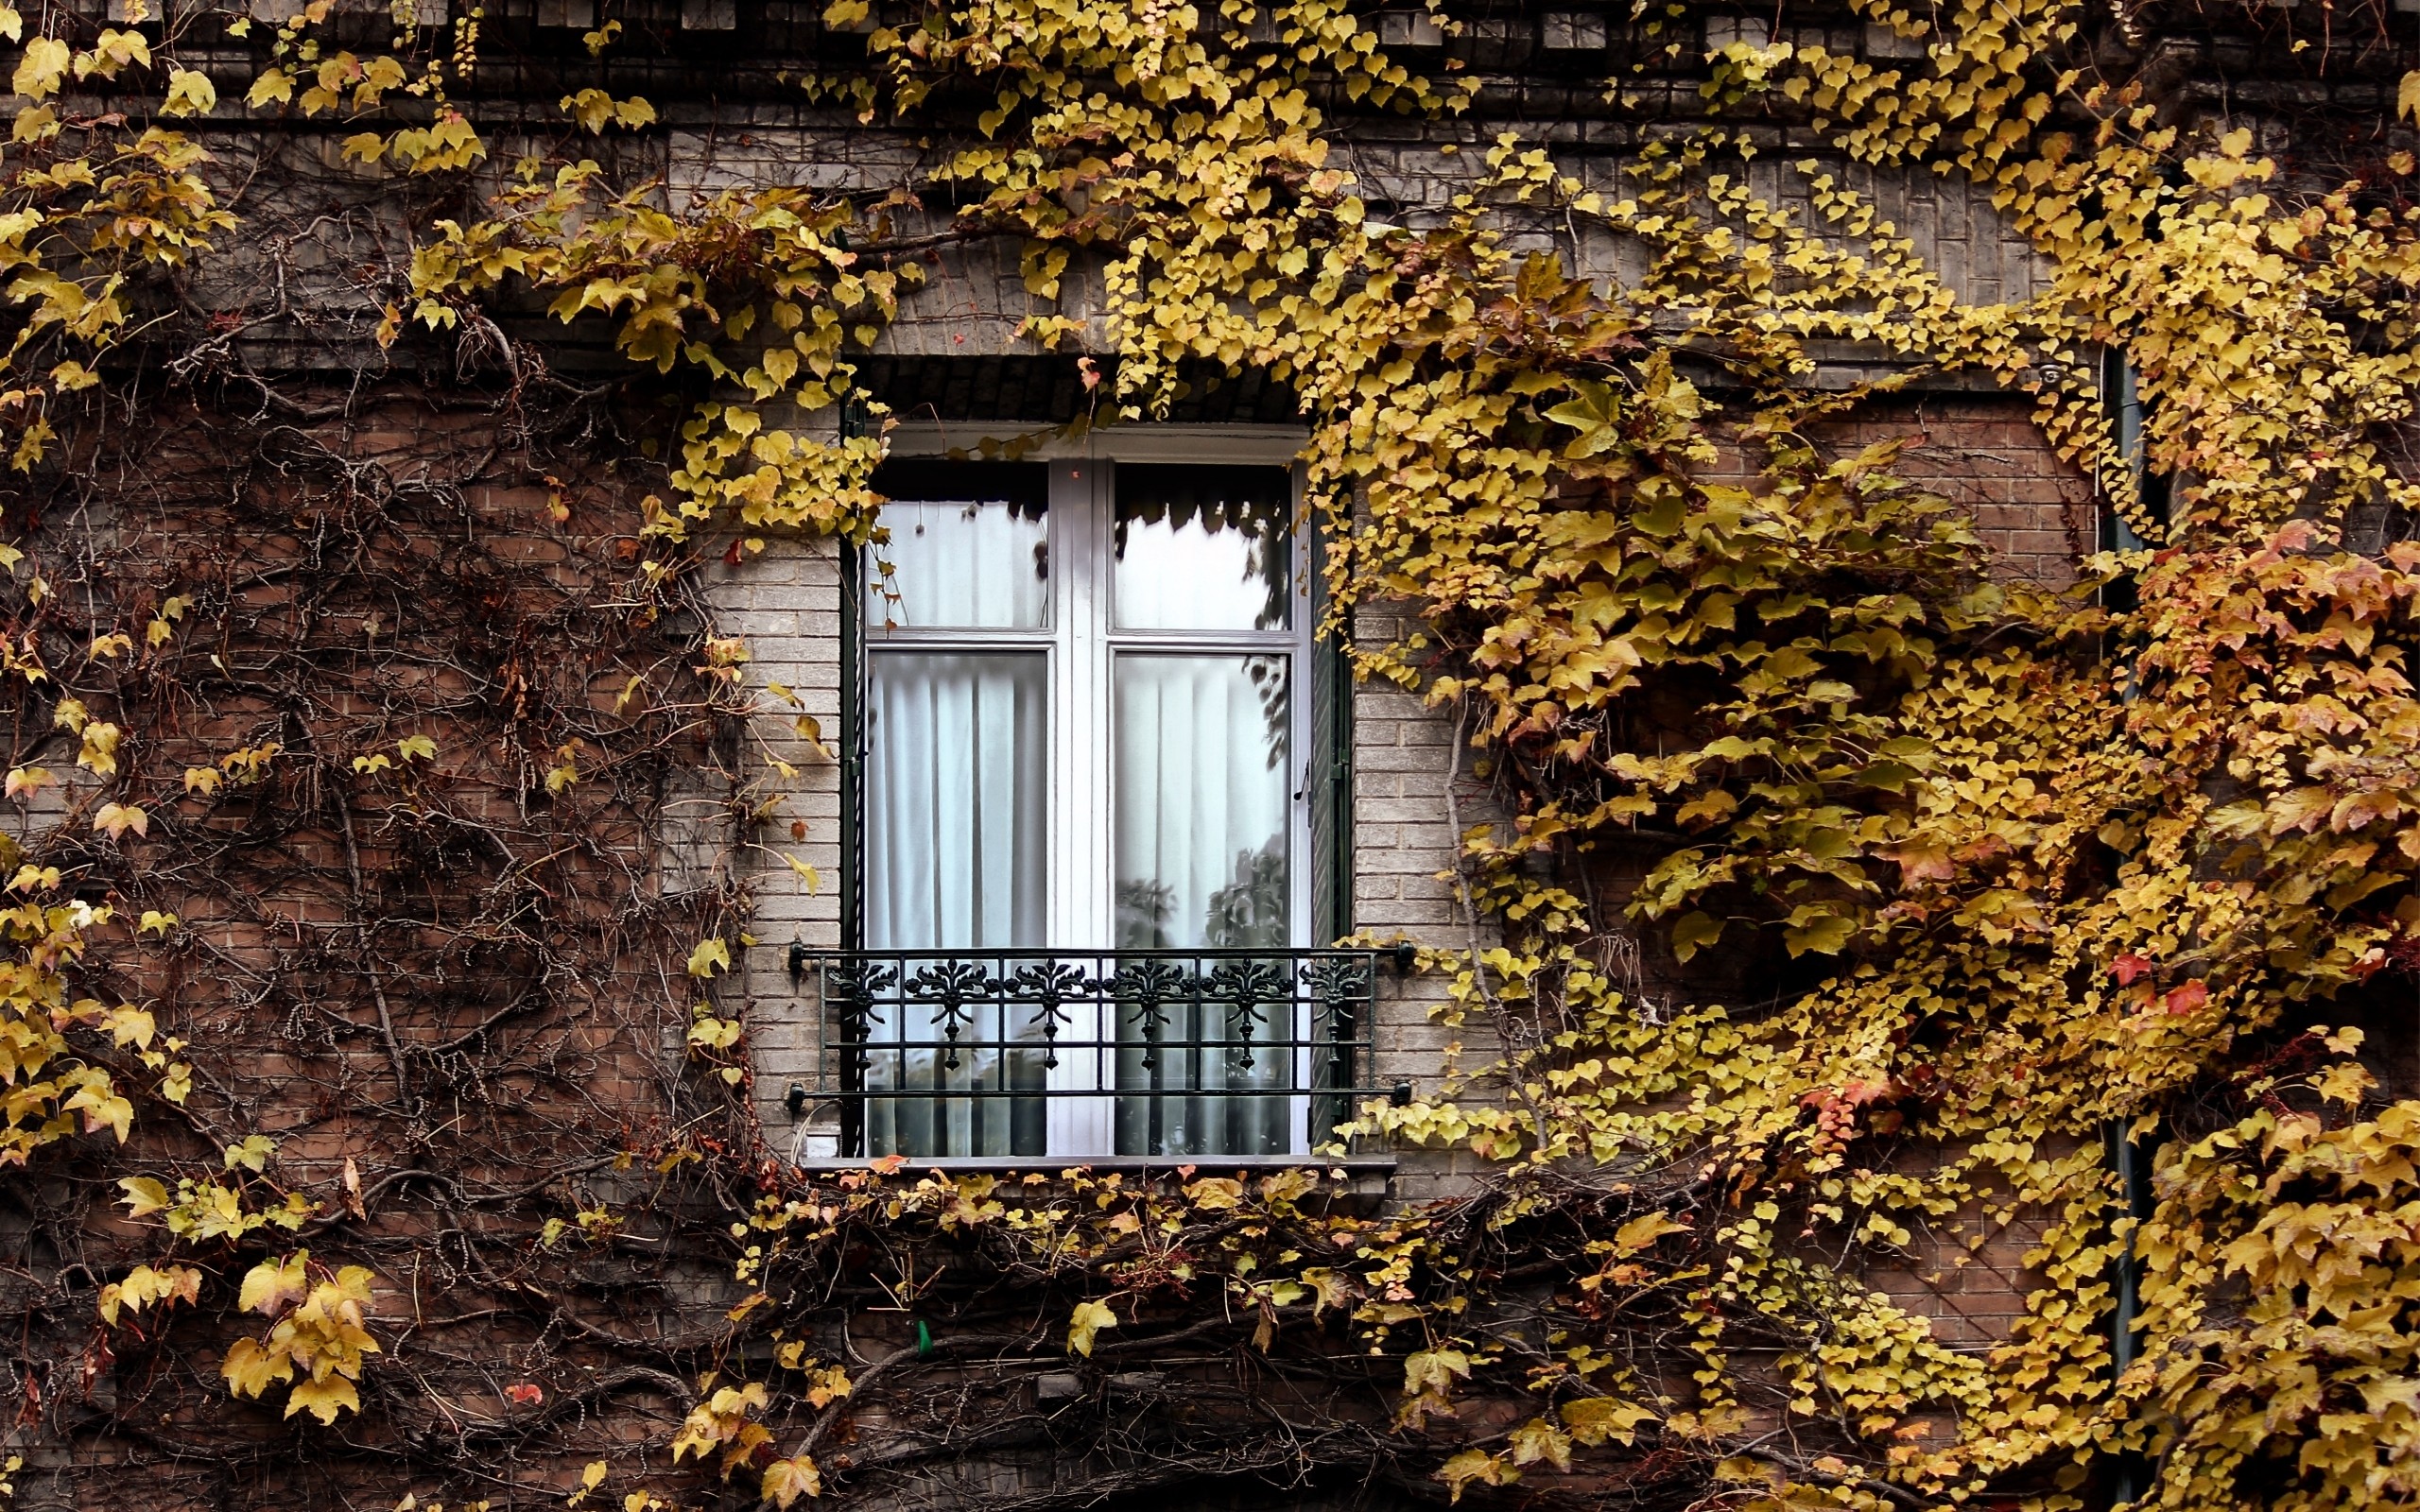 Обои на окно рабочее. Плющ ворота поместье. Старинные окна. Окно осень. Осень из окна.